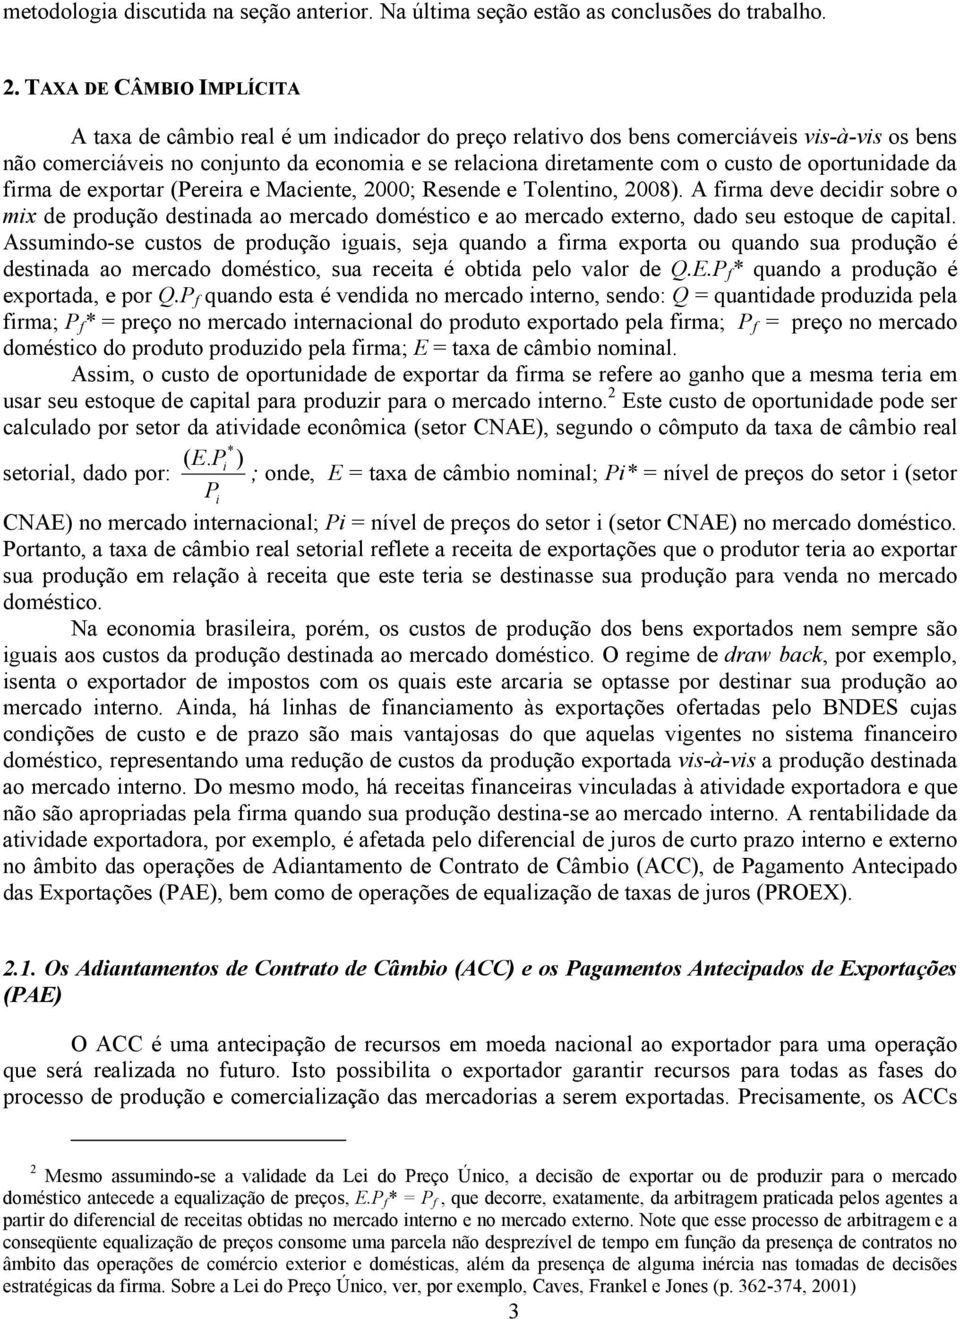 de oportunidade da firma de exportar (Pereira e Maciente, 2000; Resende e Tolentino, 2008).